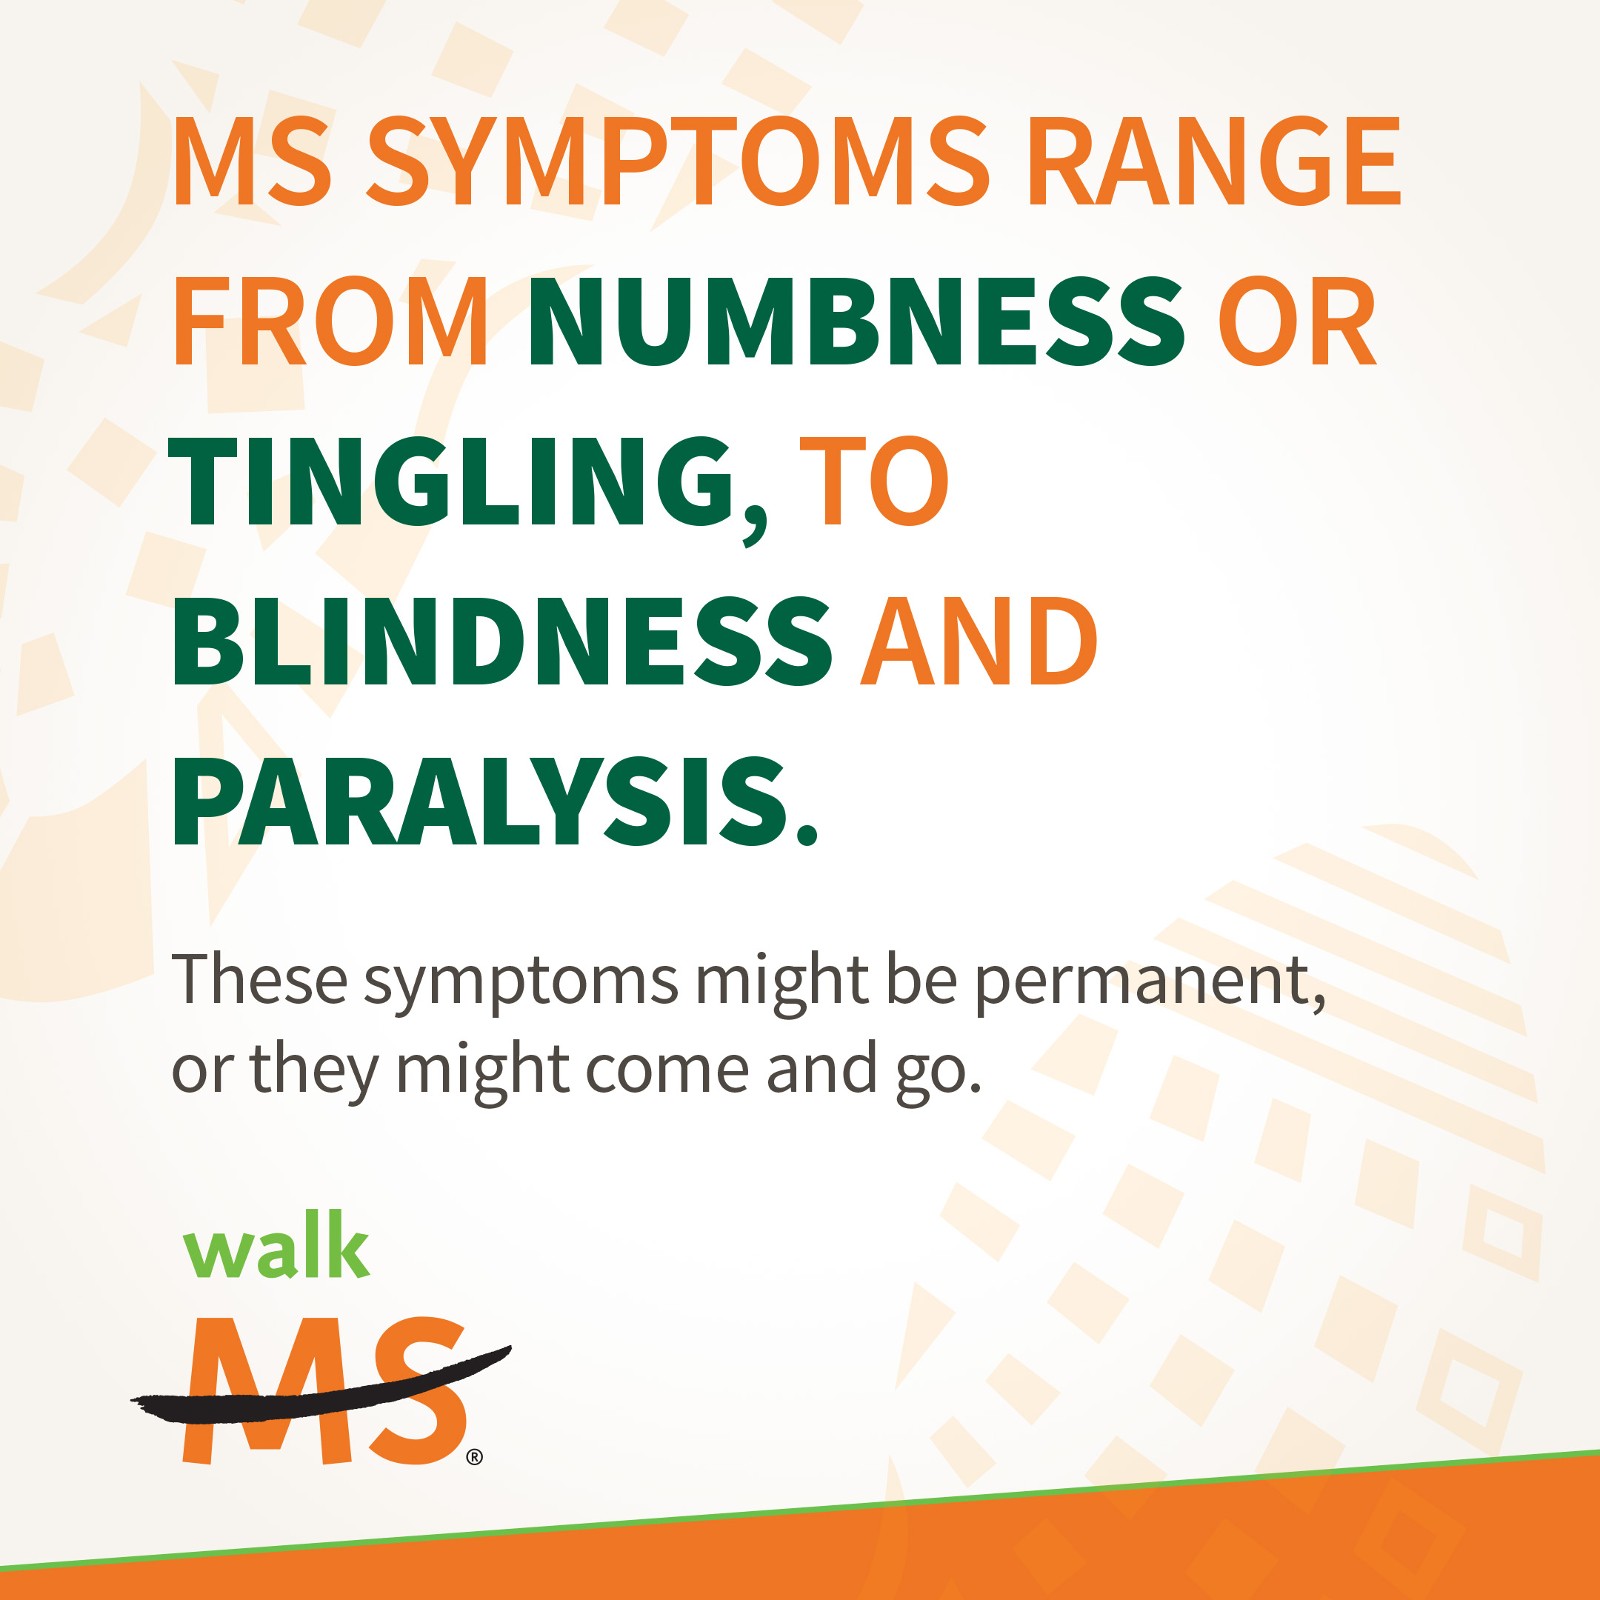 About MS symptoms